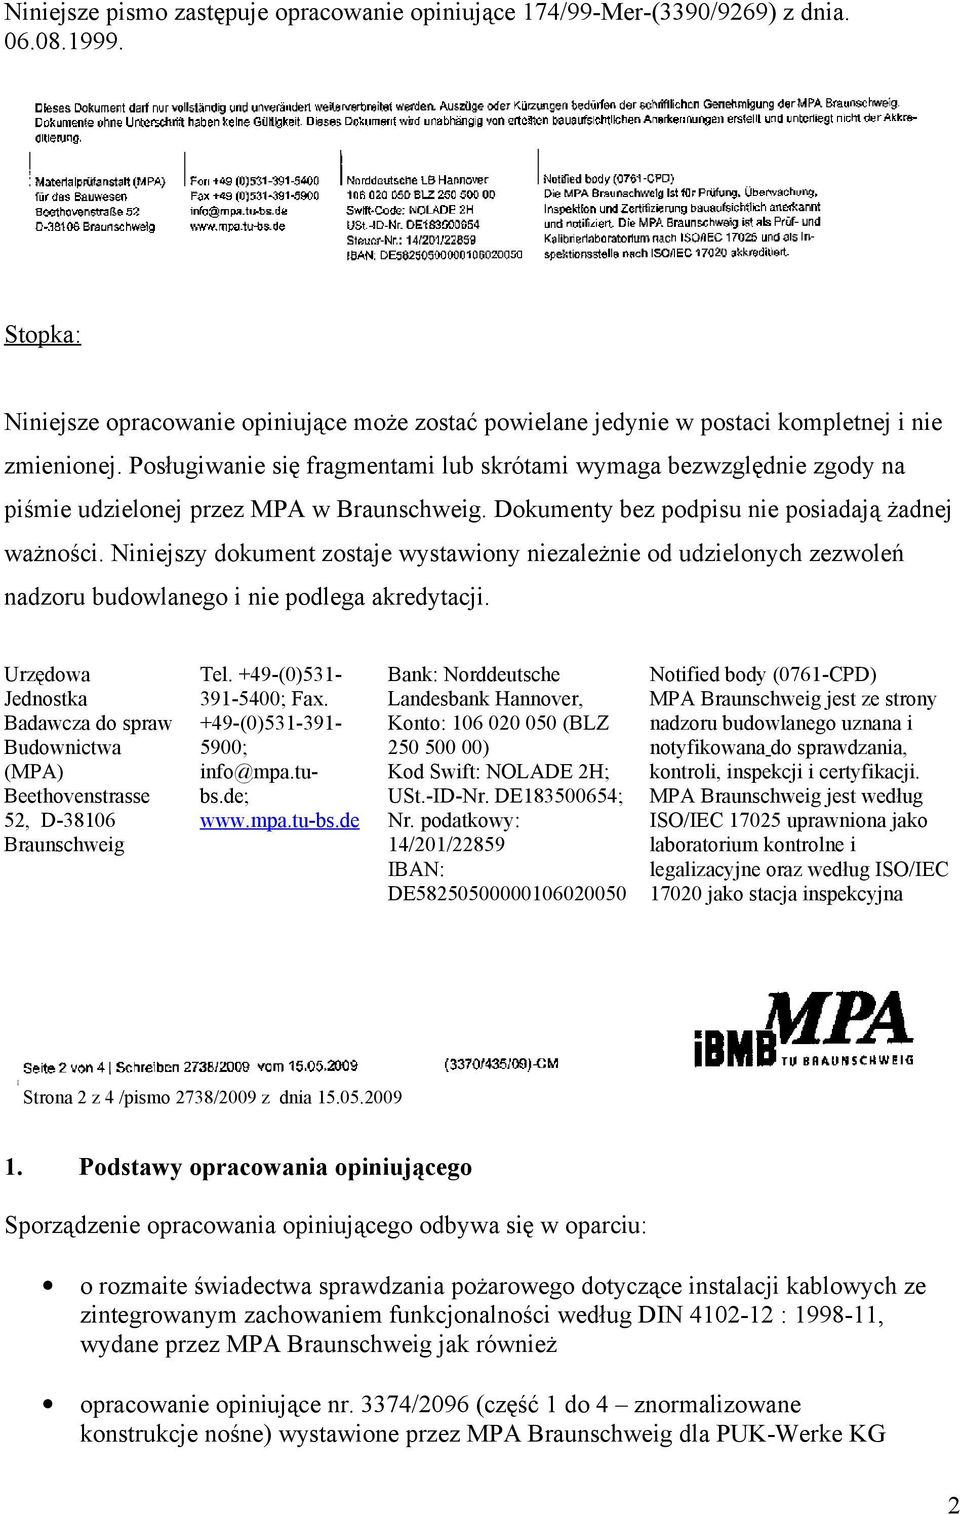 Posługiwanie się fragmentami lub skrótami wymaga bezwzględnie zgody na piśmie udzielonej przez MPA w Braunschweig. Dokumenty bez podpisu nie posiadają żadnej ważności.